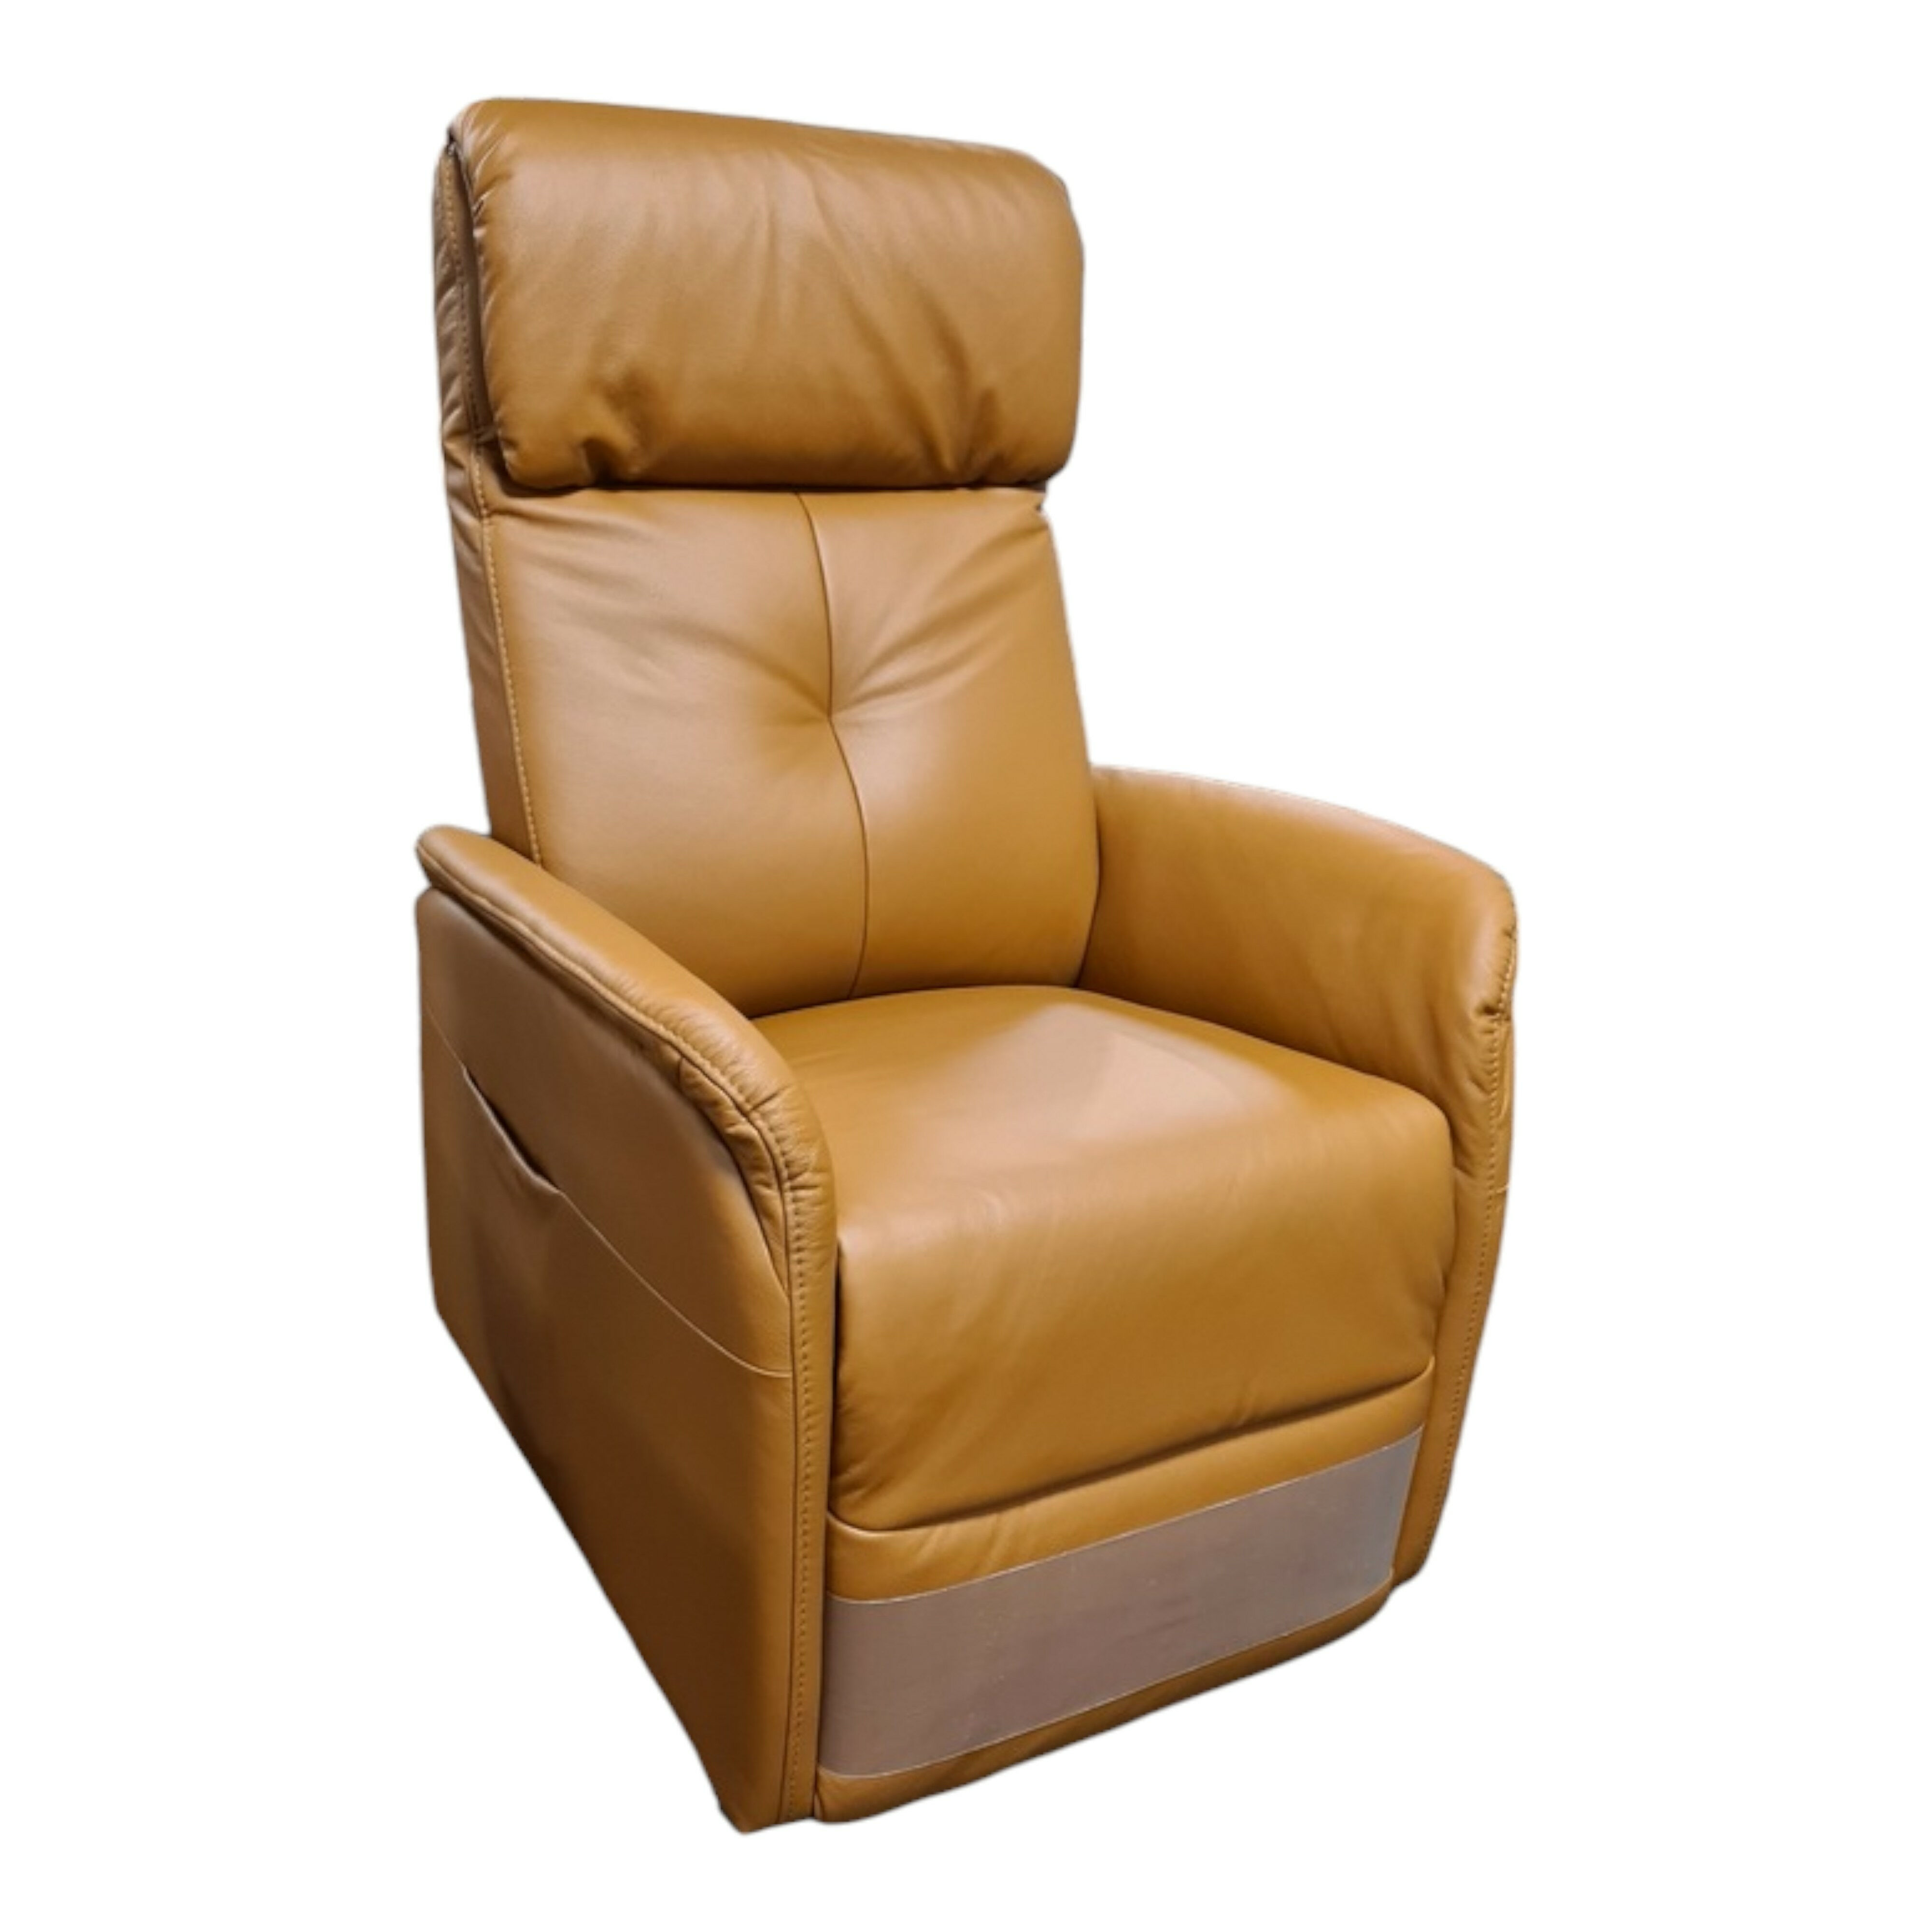 Massage-Sessel 26Y Lübeck 9261 Leder 22 Longlife Soft Whisky Braun 2-Motorig Verstellbar